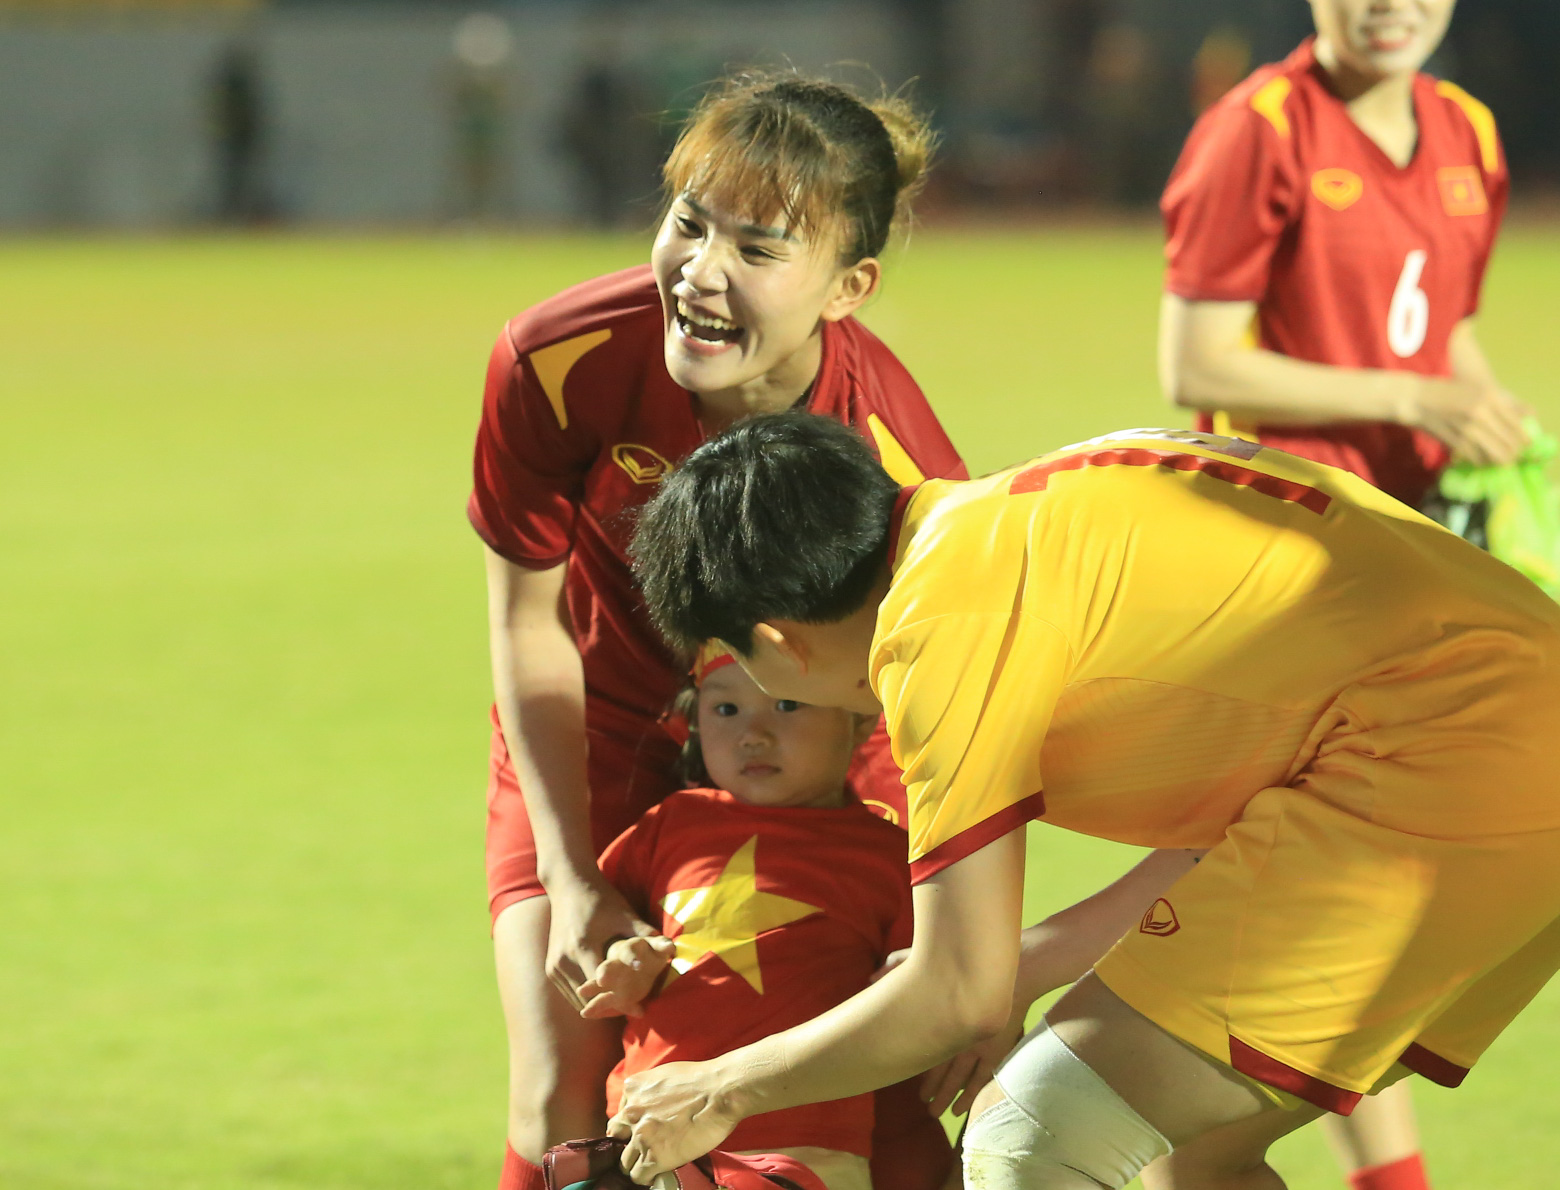 Bích Thuỳ dũng cảm lấy người chắn bóng, đội tuyển nữ Việt Nam giành vé vào chung kết SEA Games 31 - Ảnh 10.